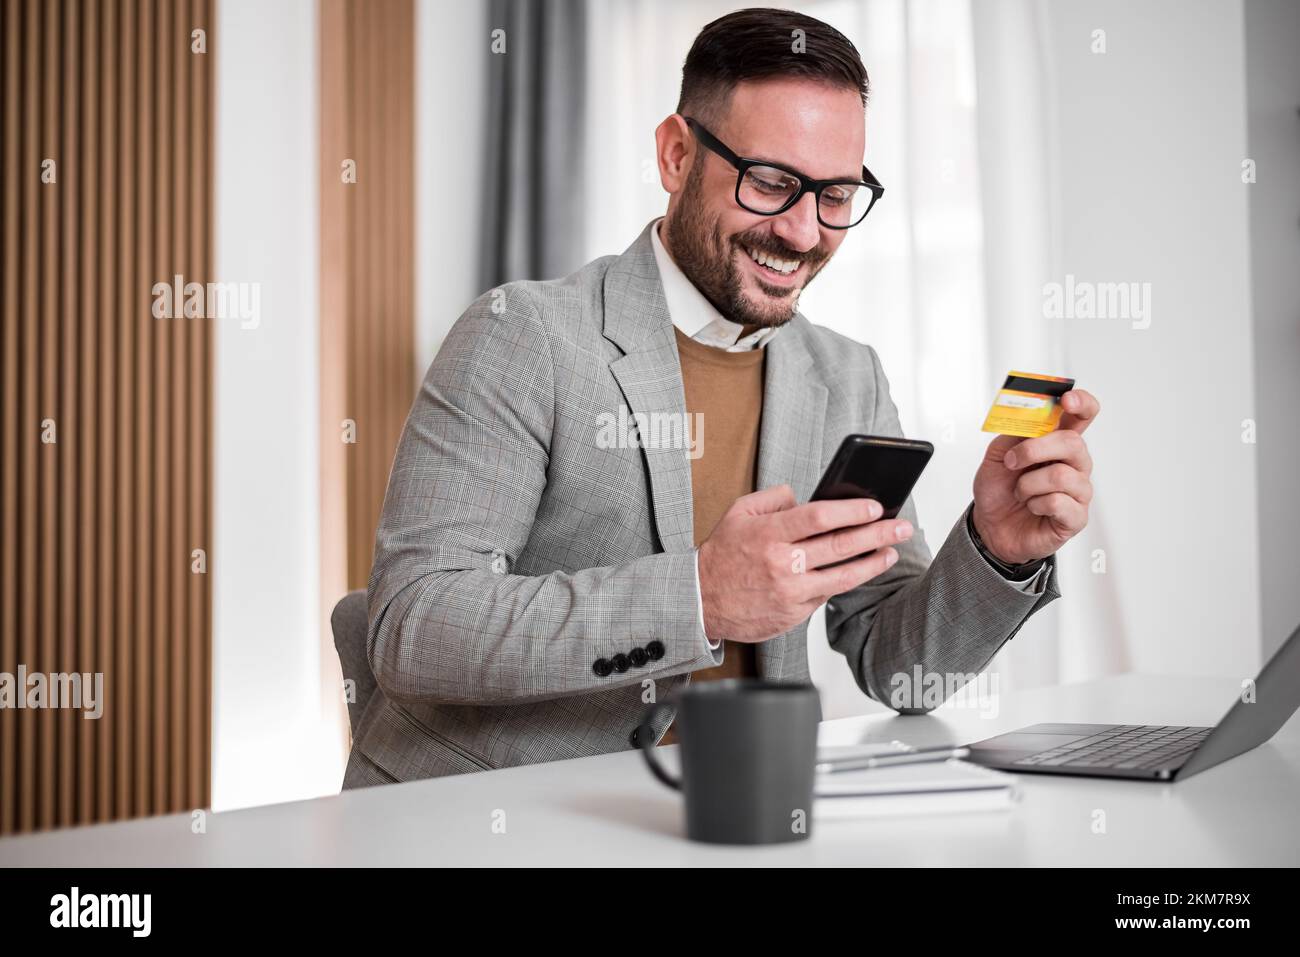 Un cadre pour adultes en costume, en vérifiant son compte bancaire sur son téléphone, souriant tout en tenant sa carte bancaire. Banque D'Images